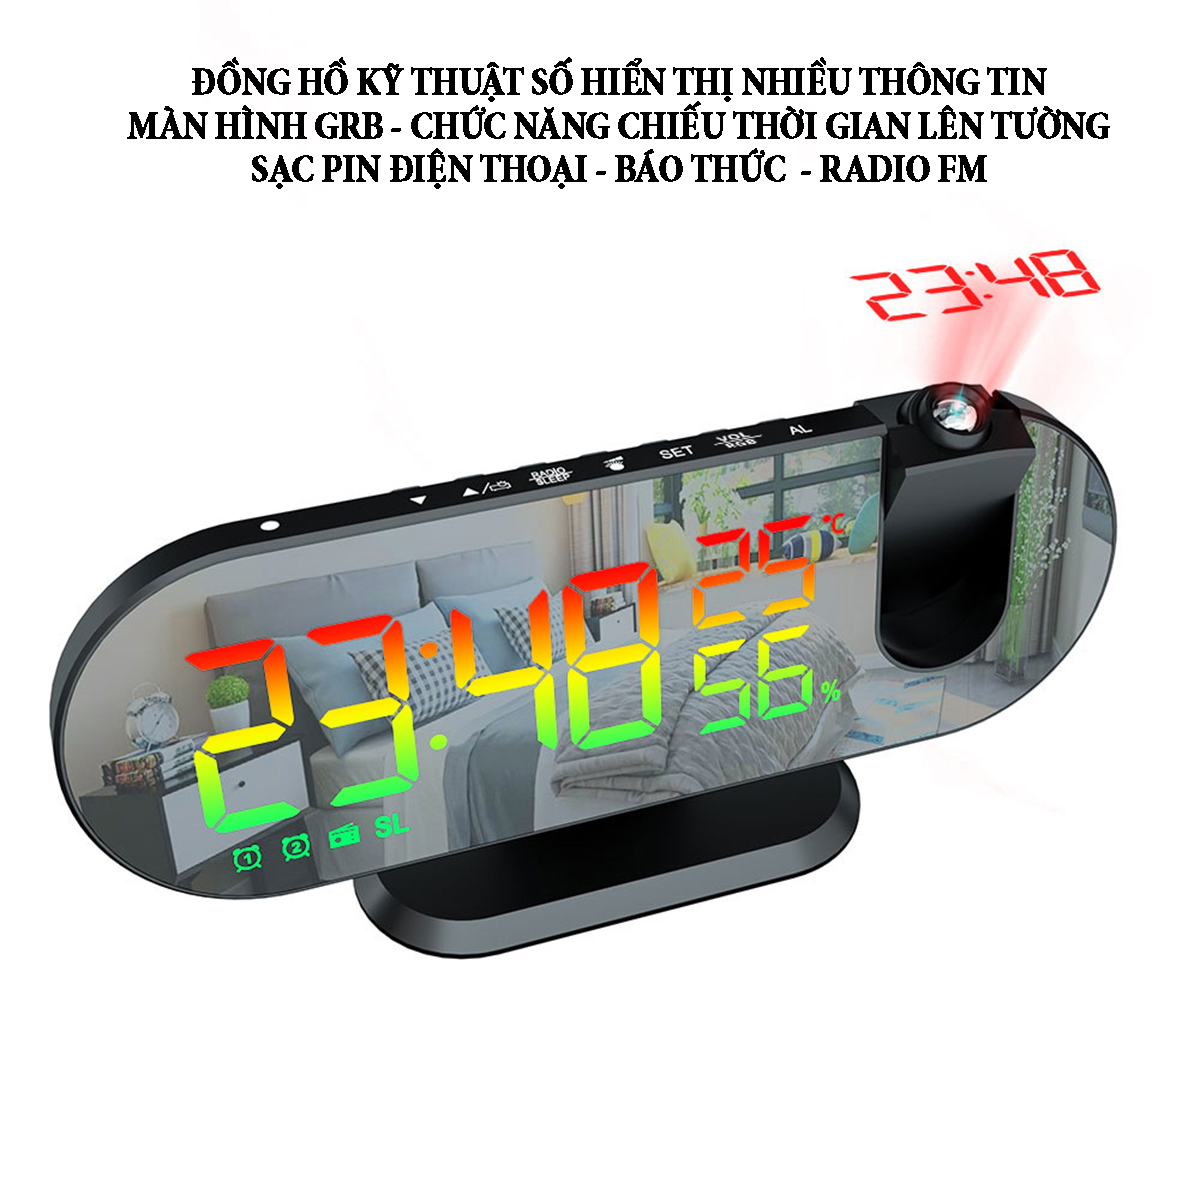 Đồng hồ kỹ thuật số hiển thị nhiều thông tin với màn hình led GRB chức năng chiếu thời gian lên tường hỗ trợ sạc pin điện thoại radio FM báo thức